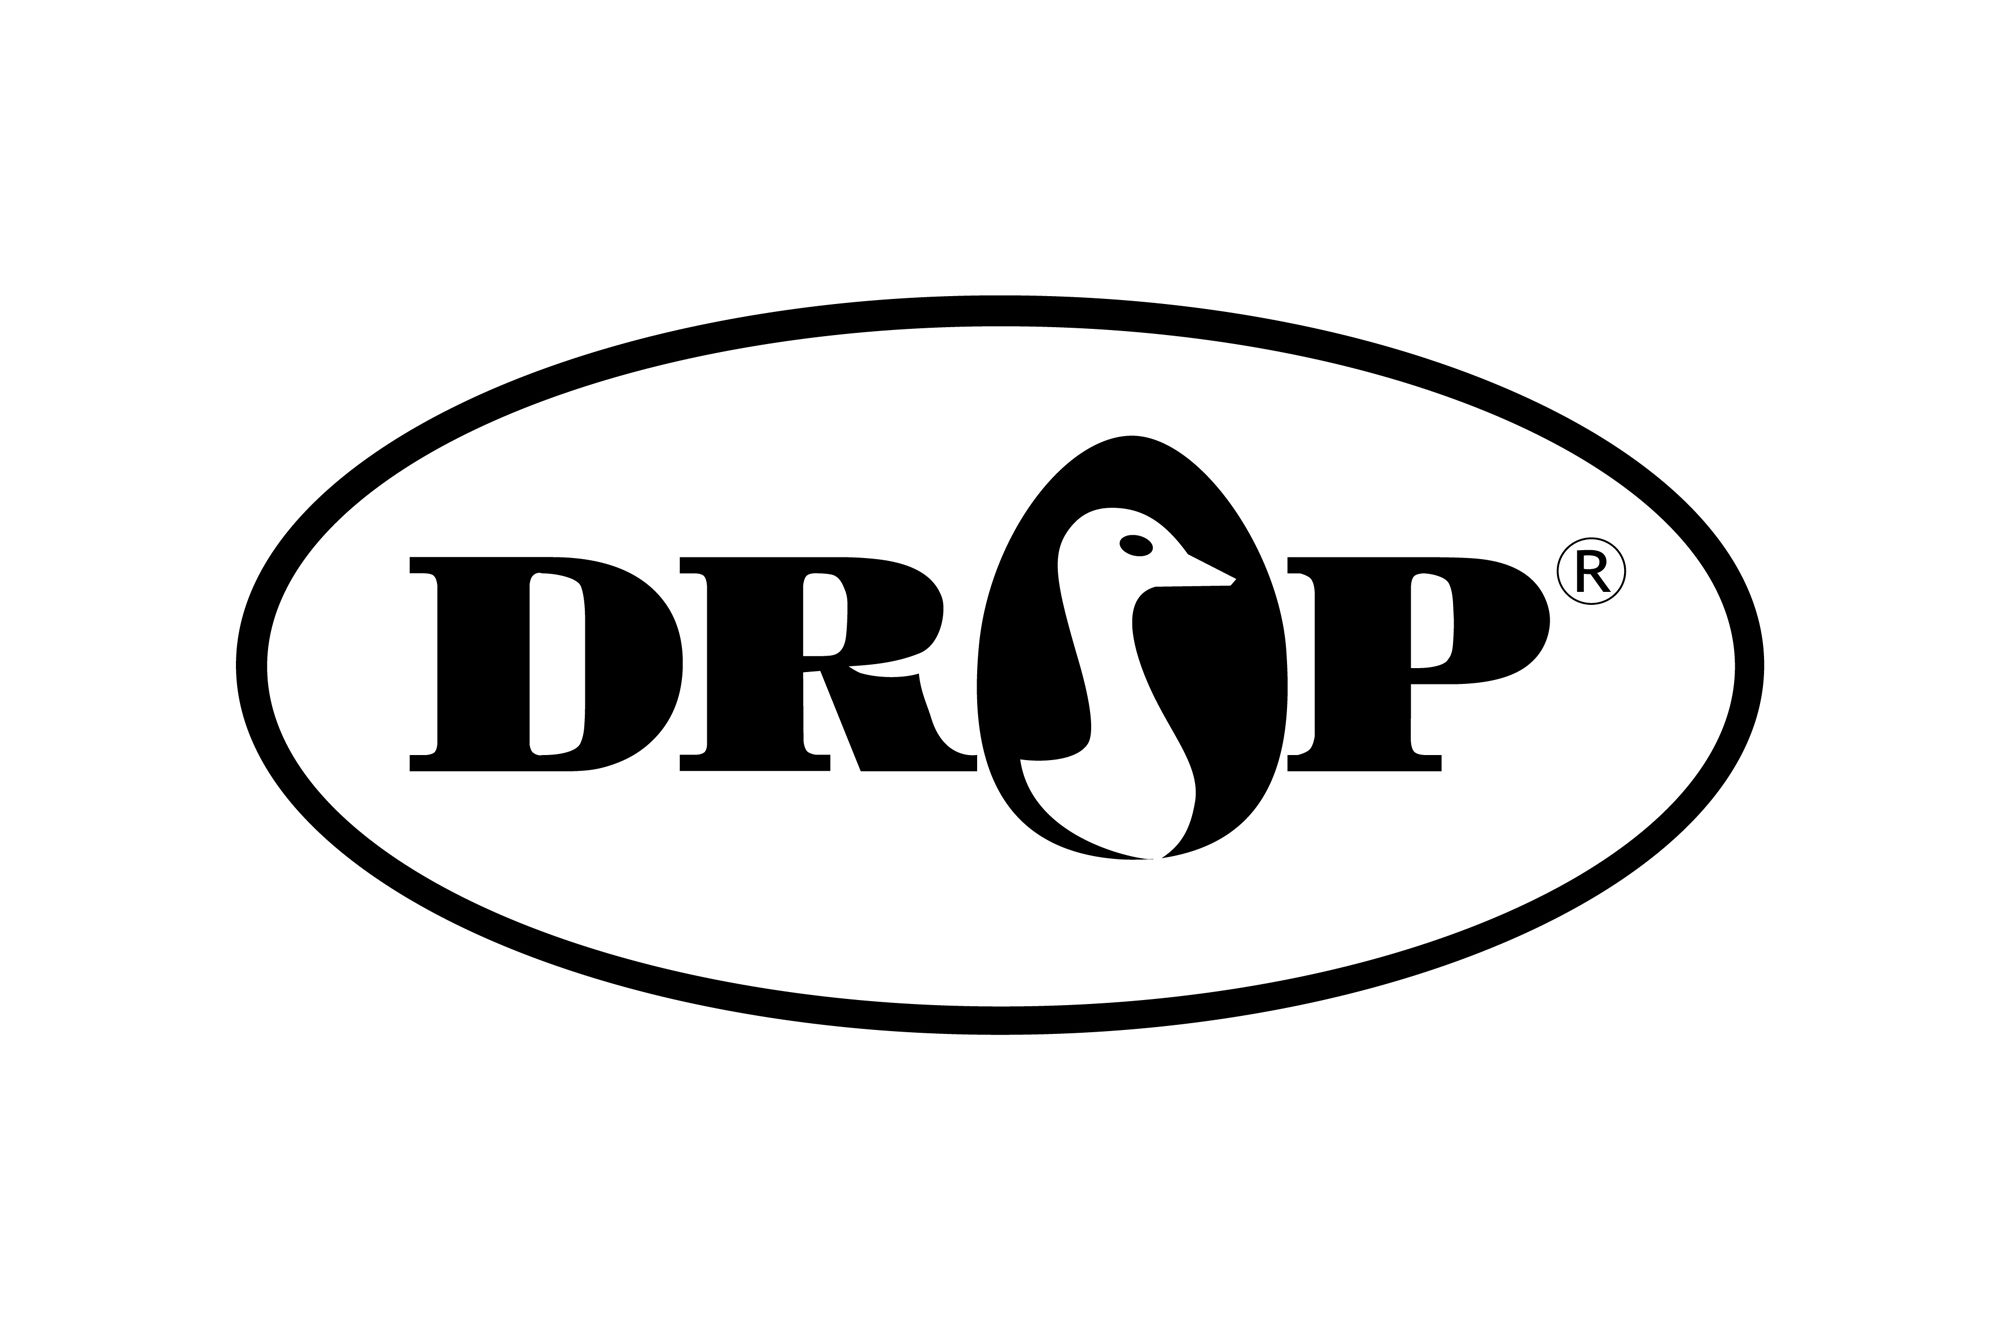 DROP - logo PLANSZA 30x30cm EDYCJA